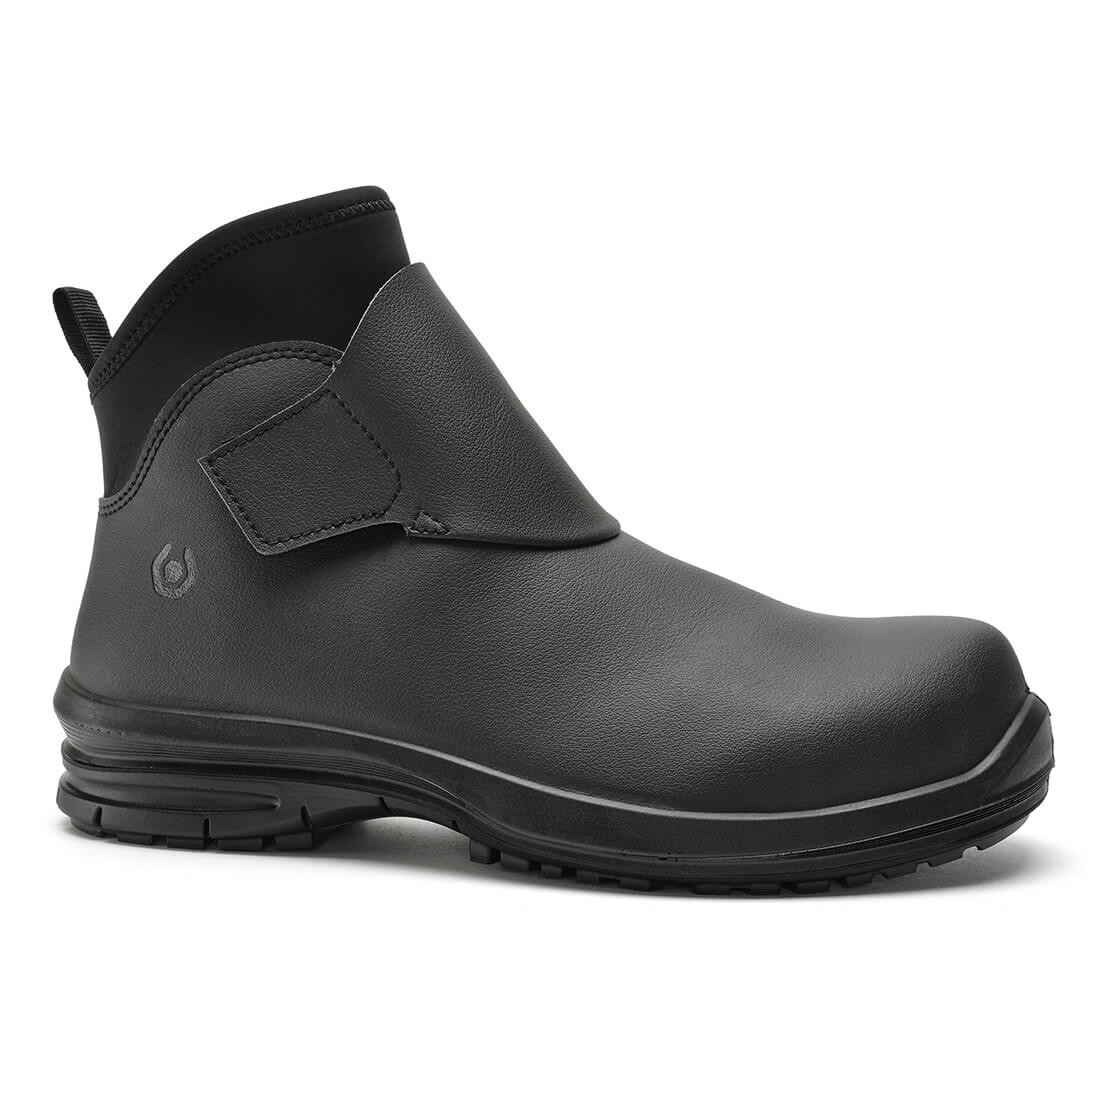 Bottes NAUTILUS S6 SRC/Noir - Les chaussures de protection